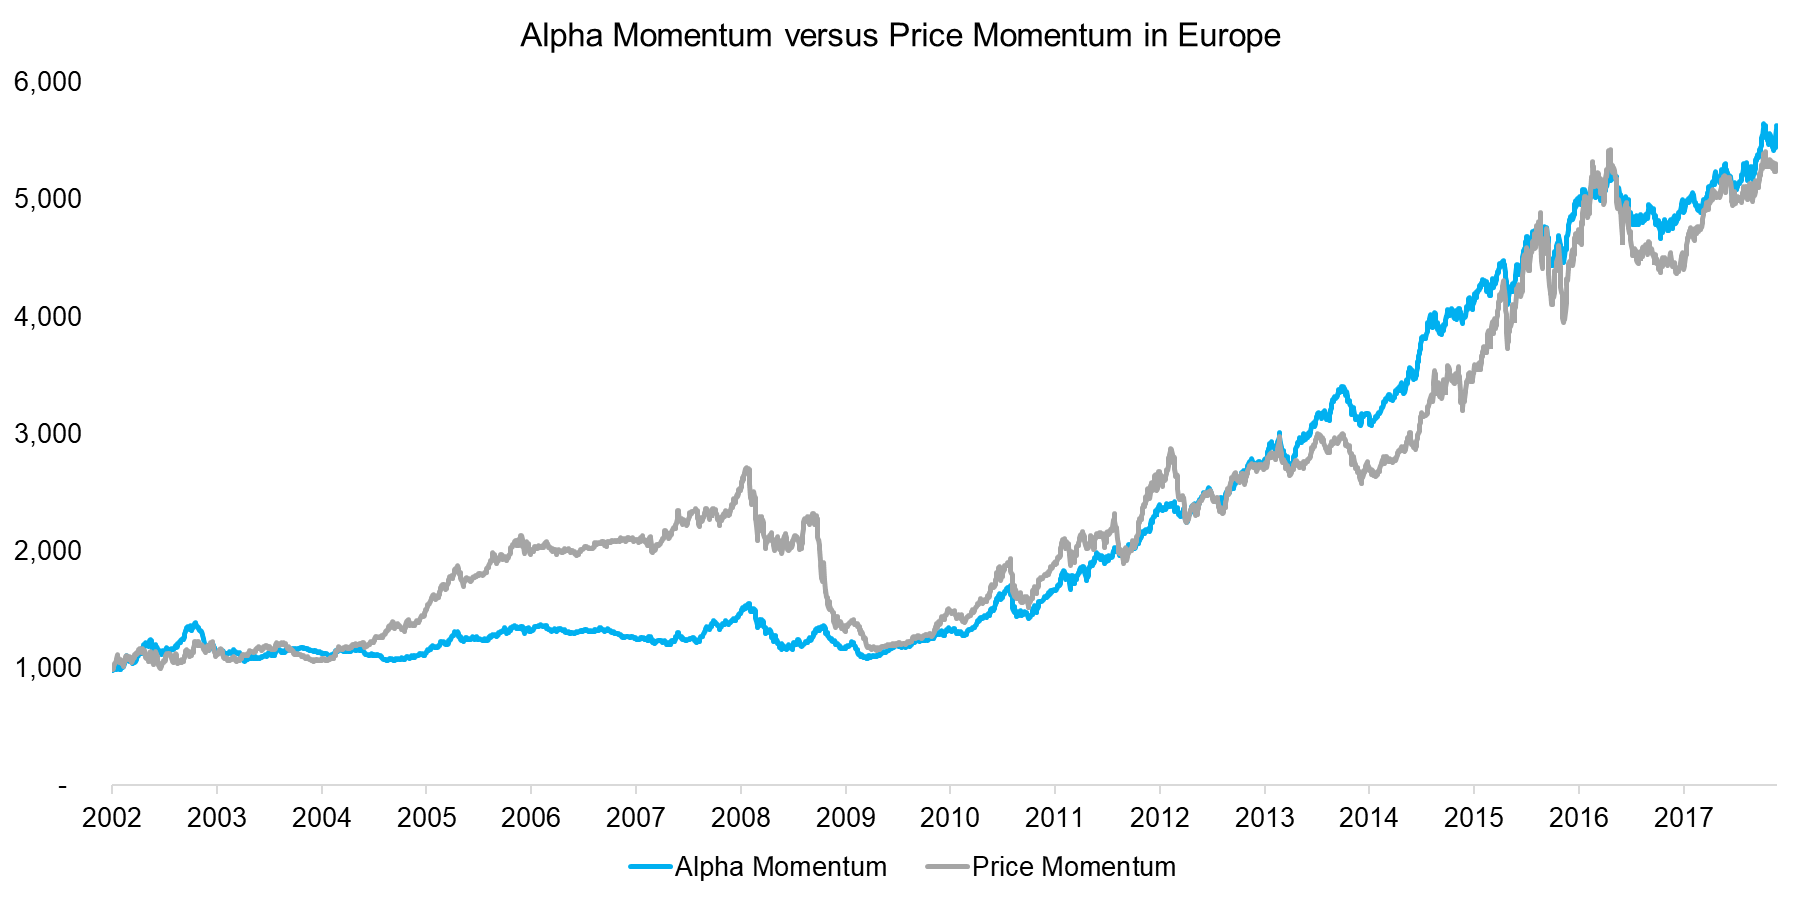 Alpha Momentum versus Price Momentum in the Europe